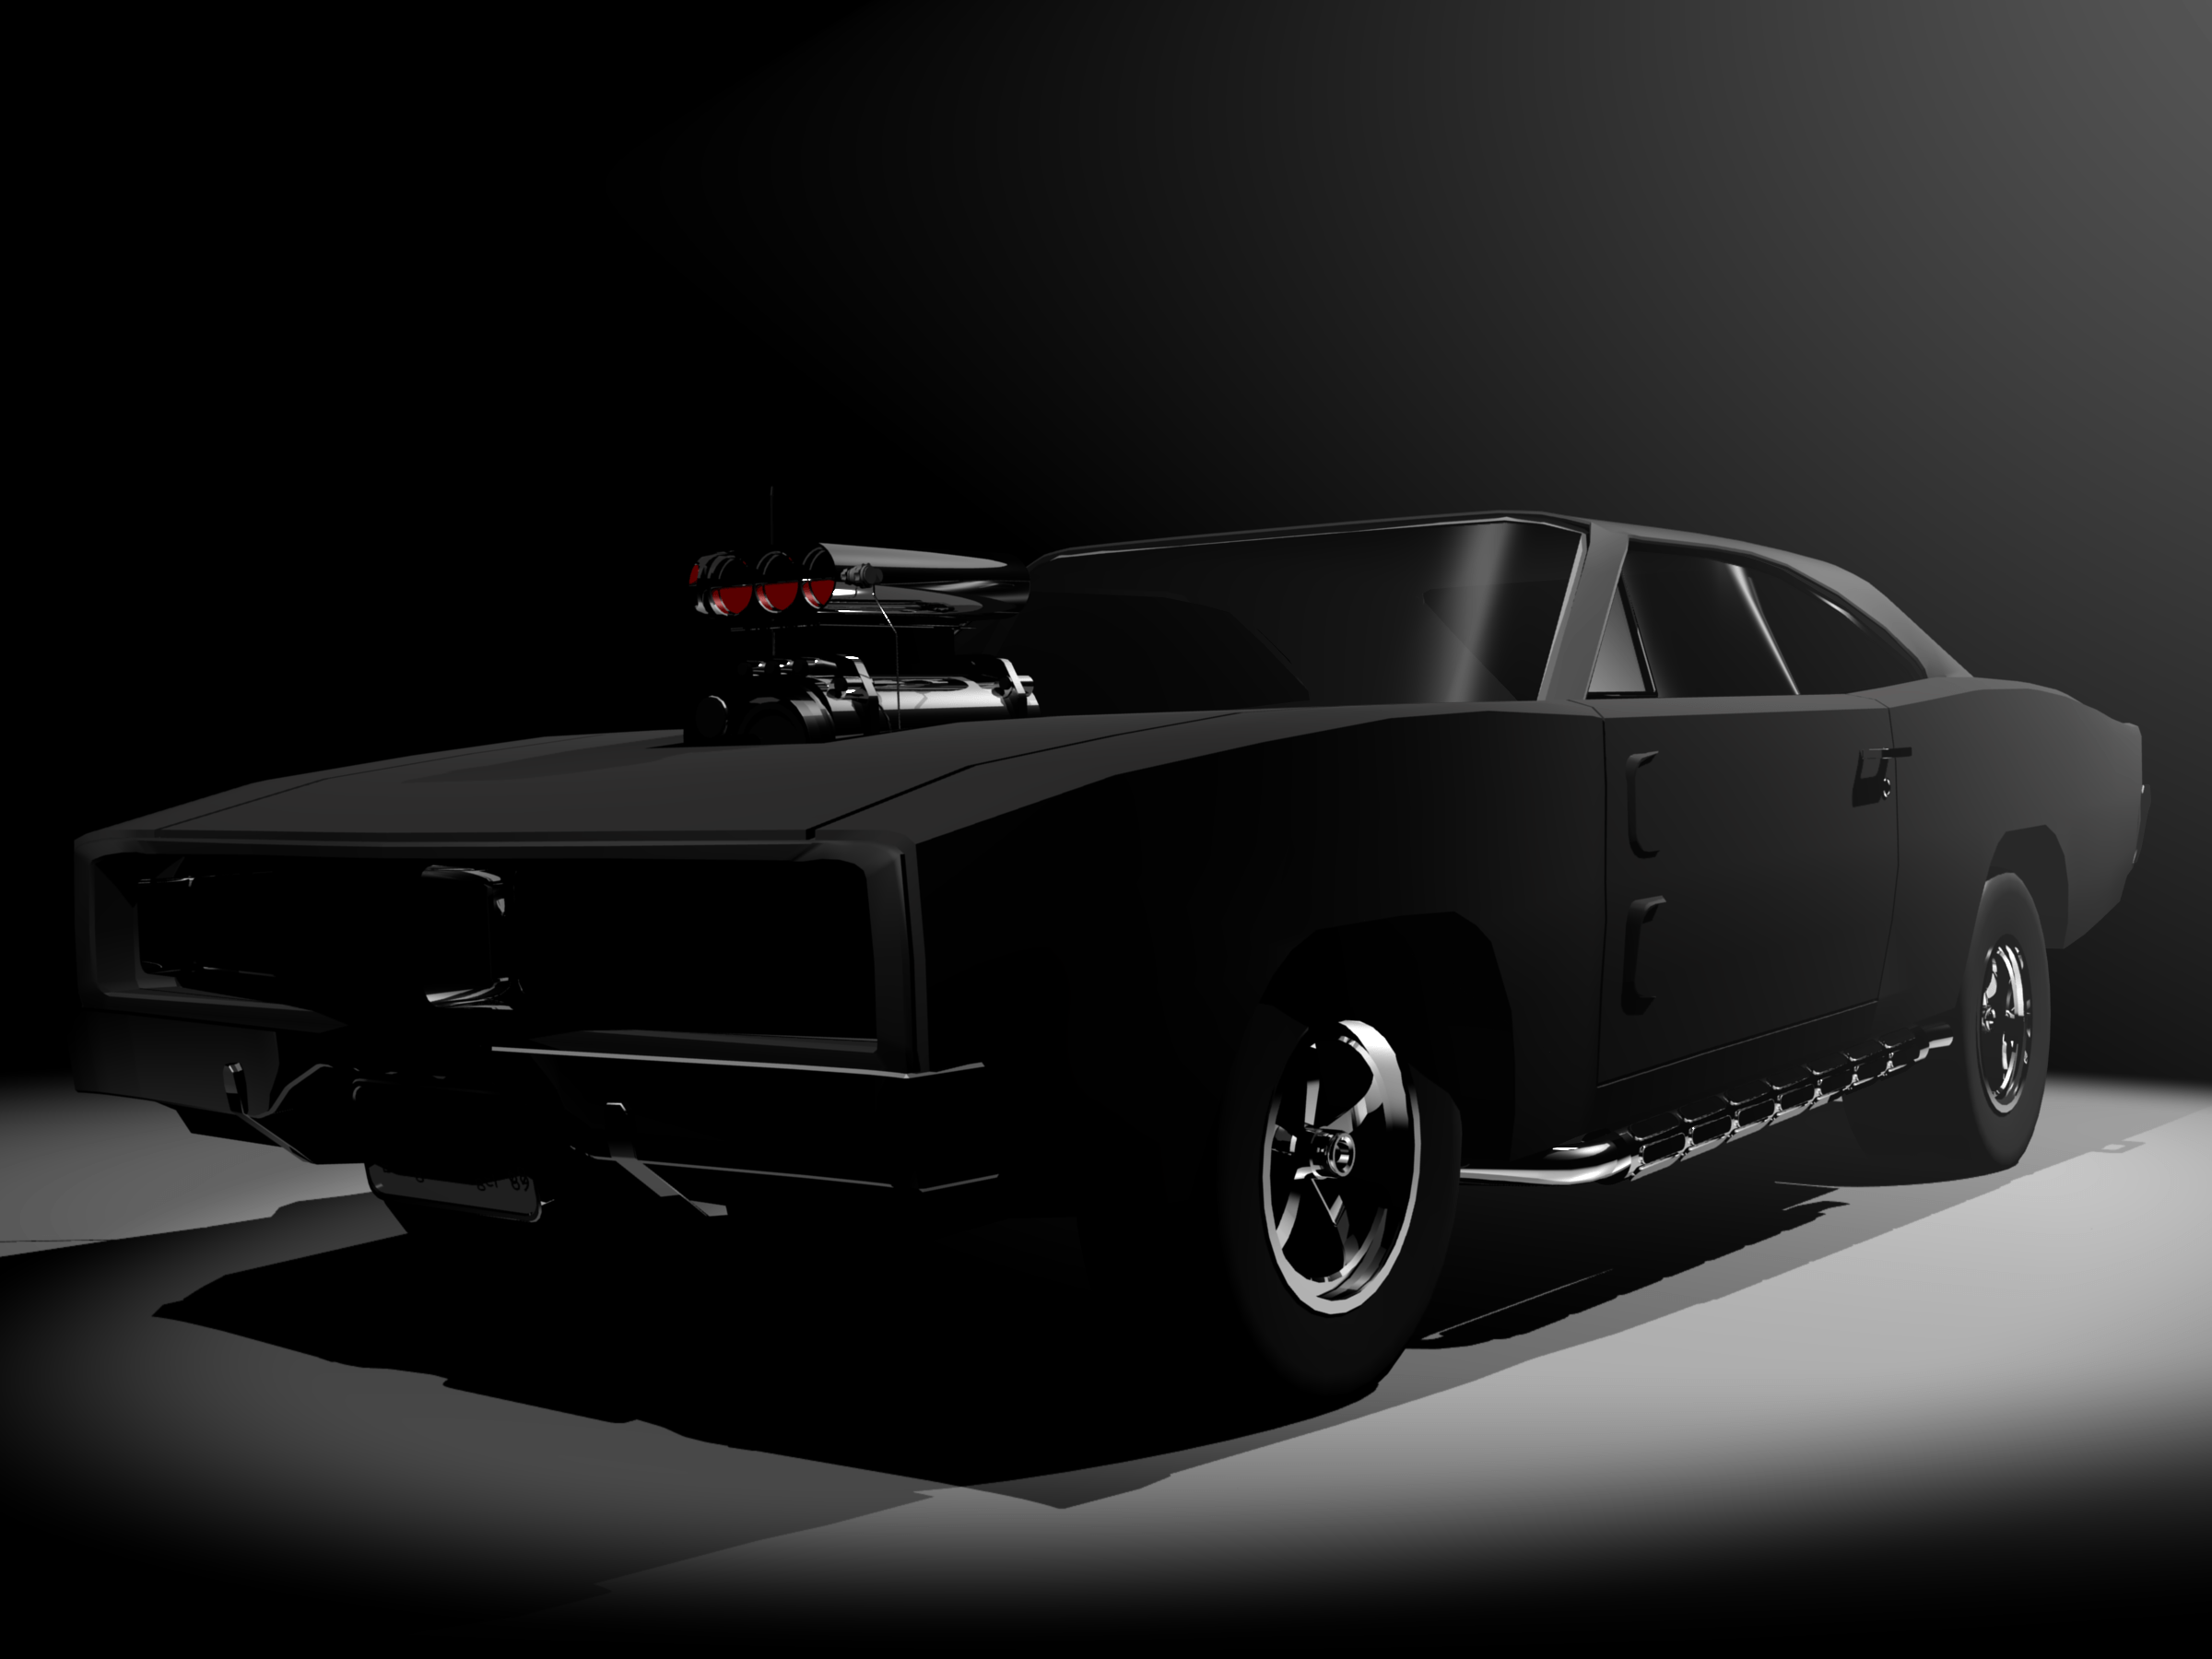 Dodge charger 1969 black. Cars. Dodge charger, Black